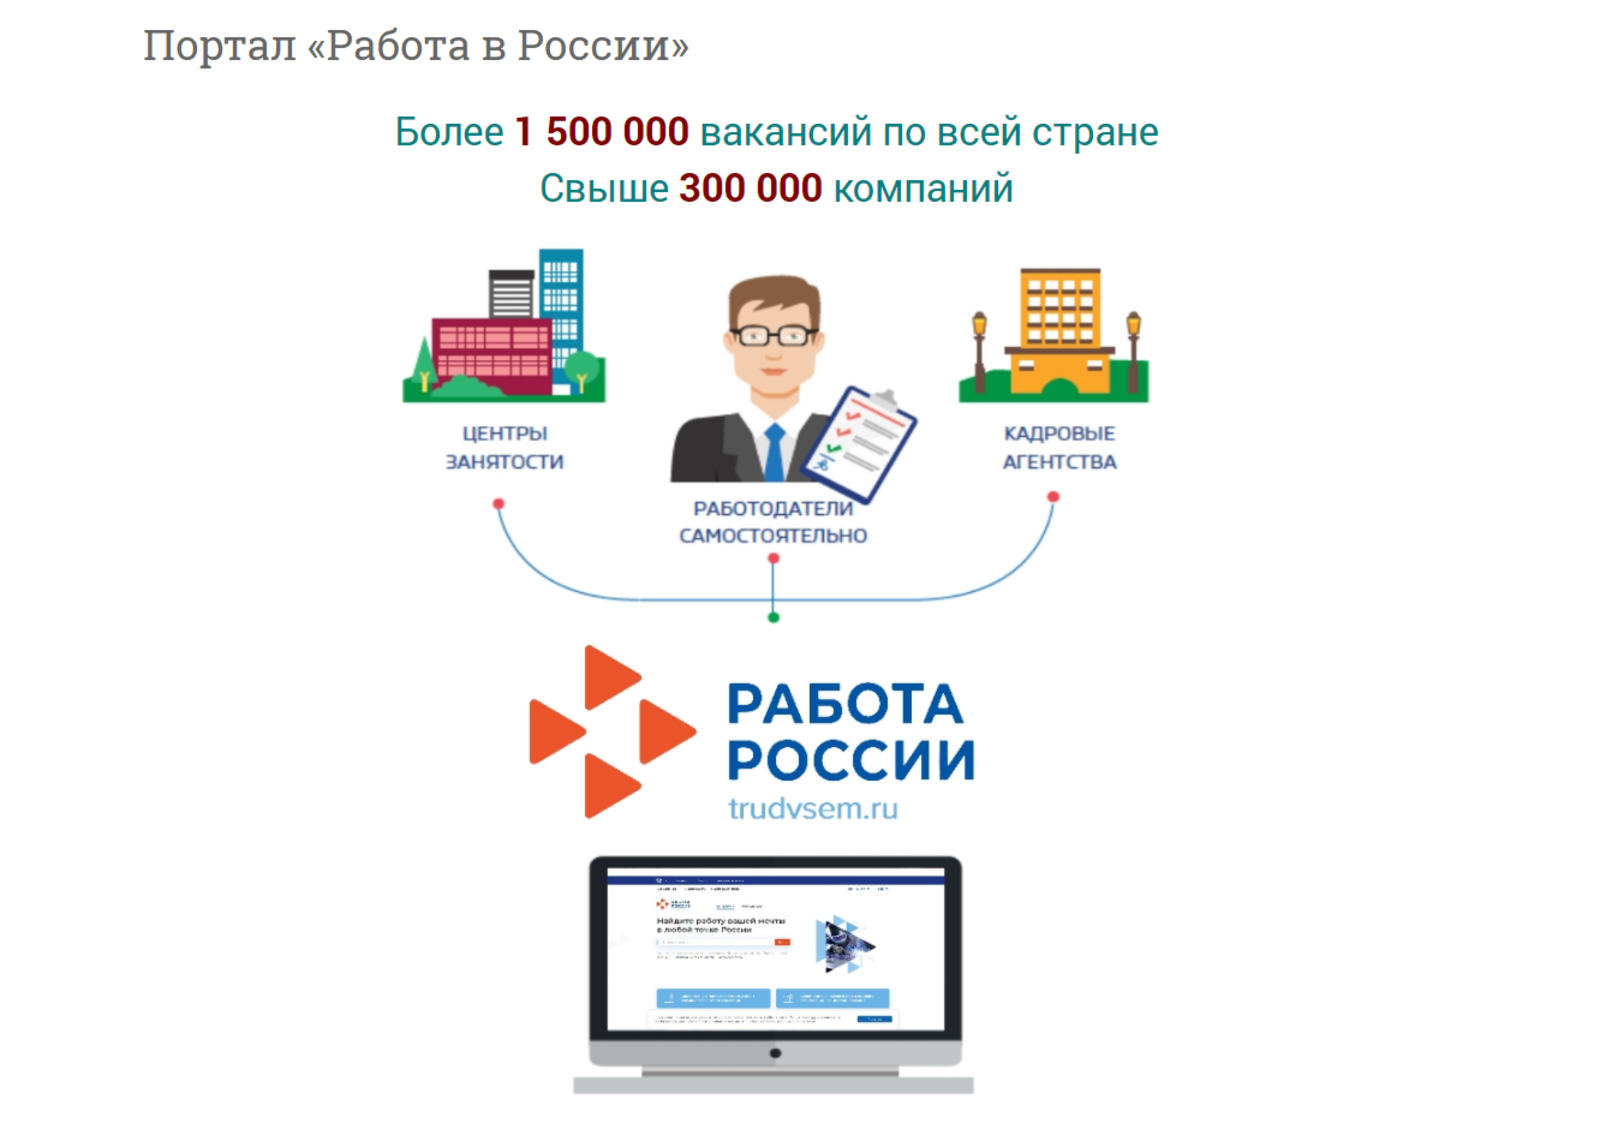 Работодатели Башкирии активно пользуются порталом «Работа в России»